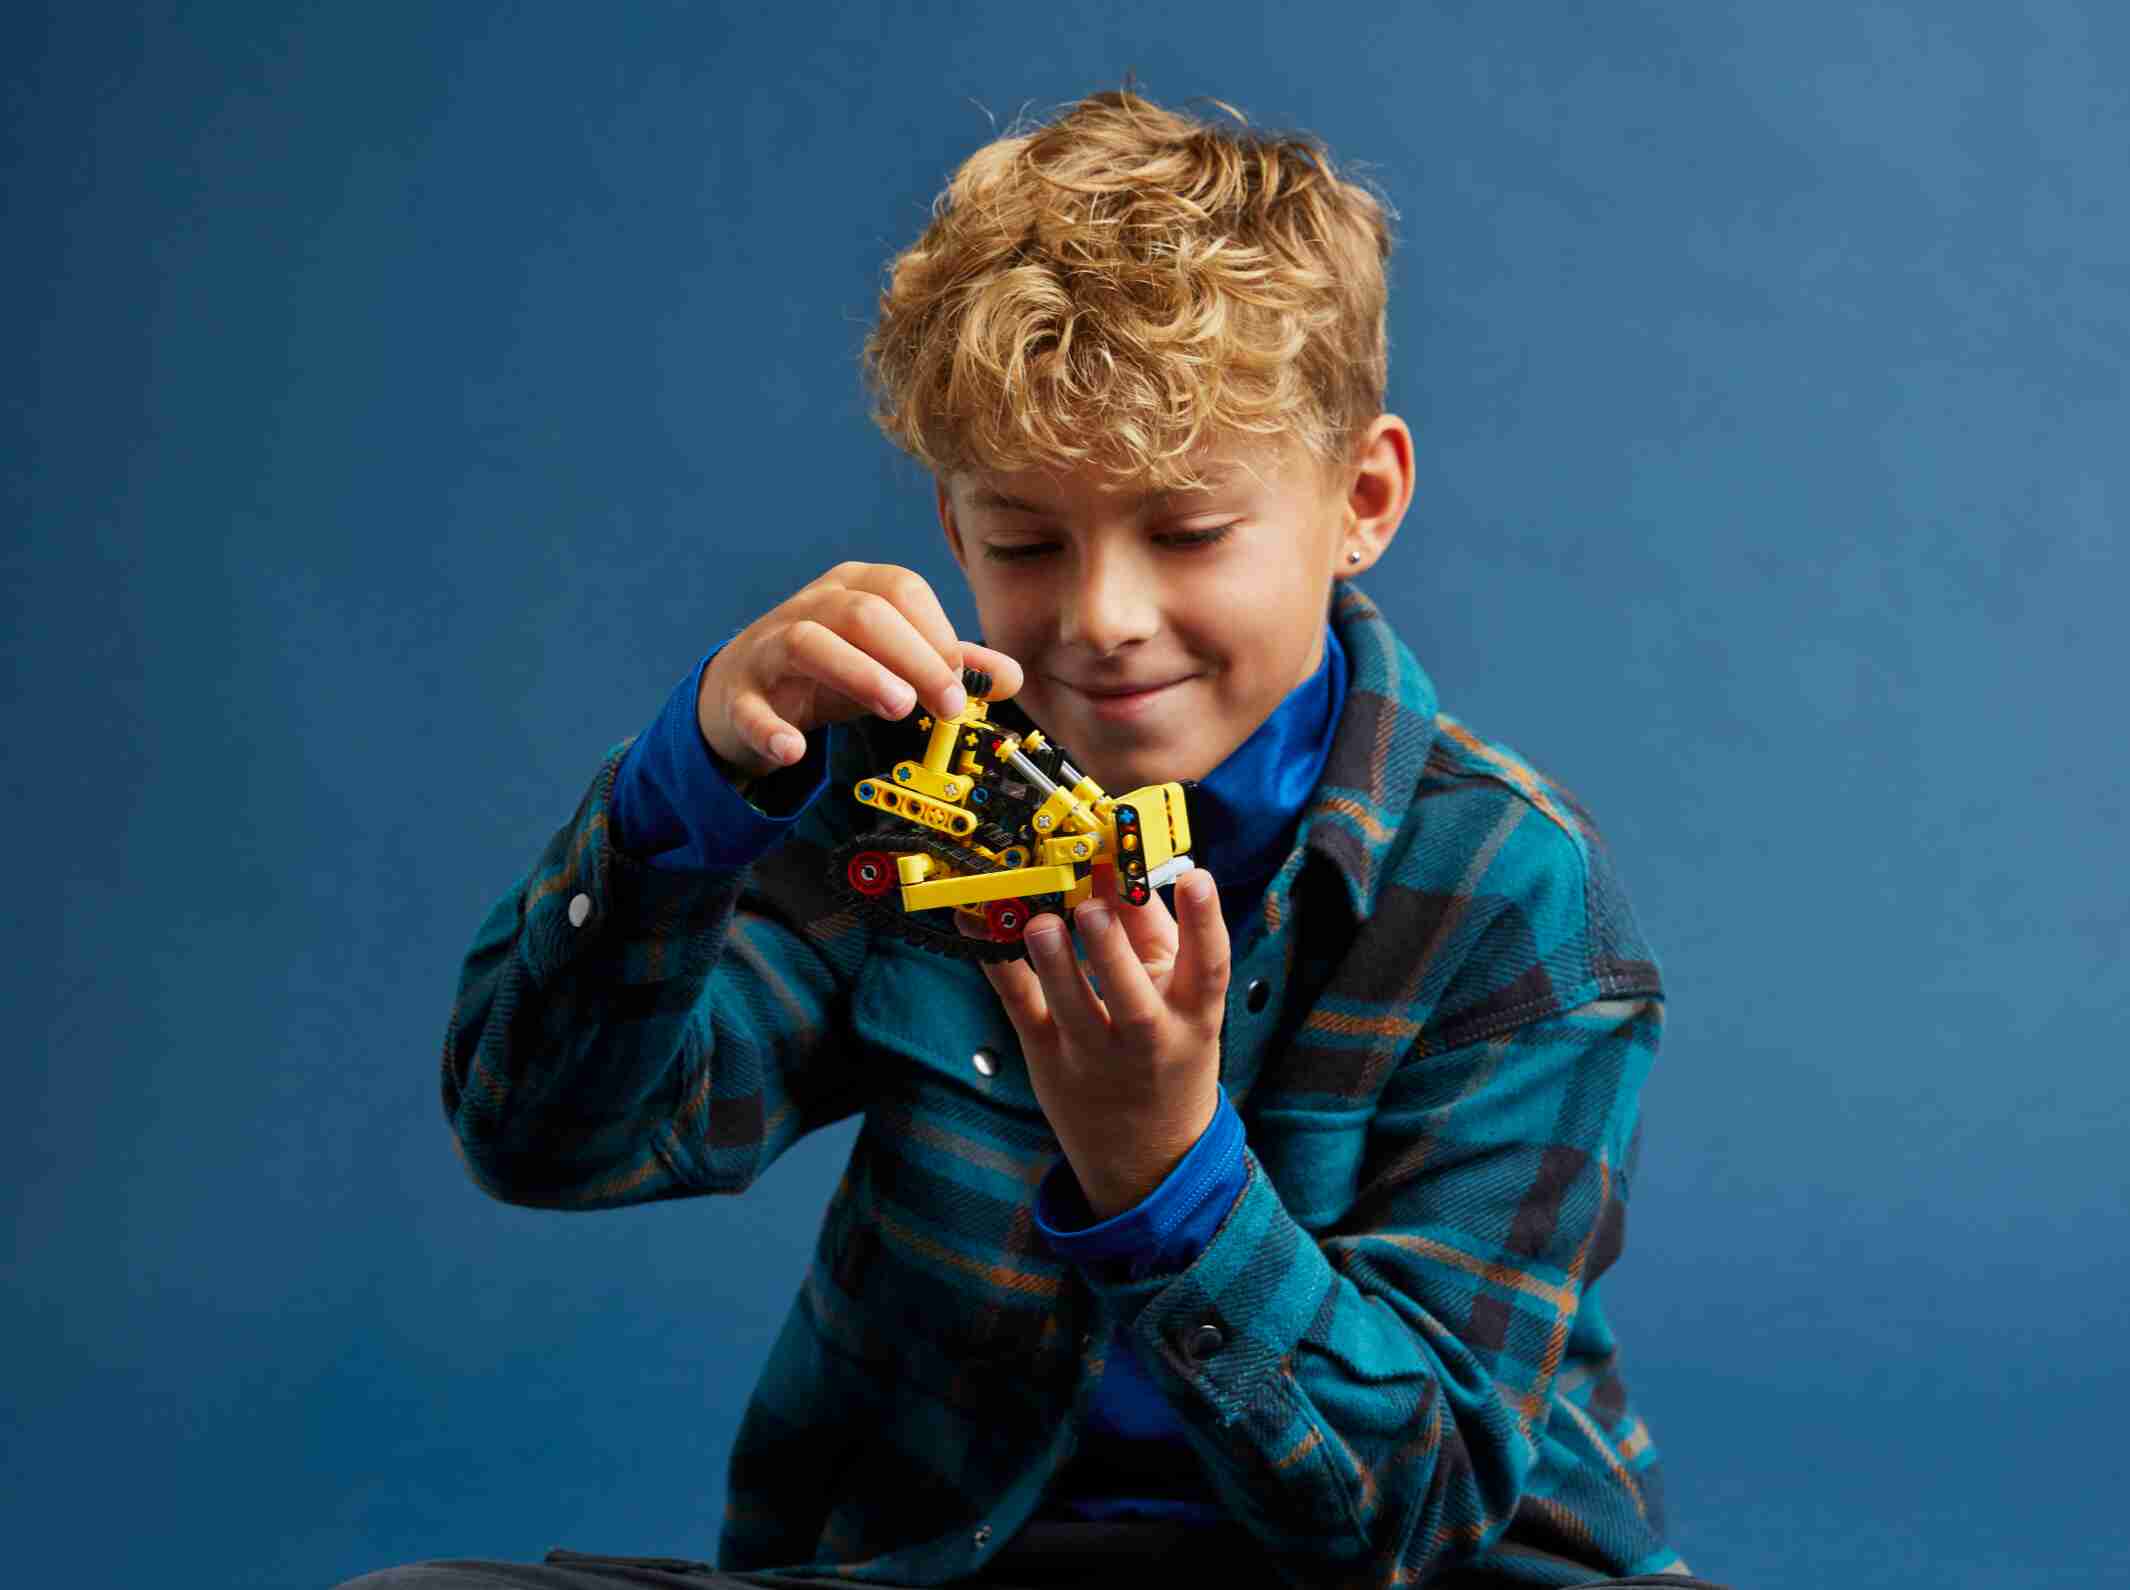 LEGO 42163 Technic Schwerlast Bulldozer, Bewegliche Ketten und Planierschild